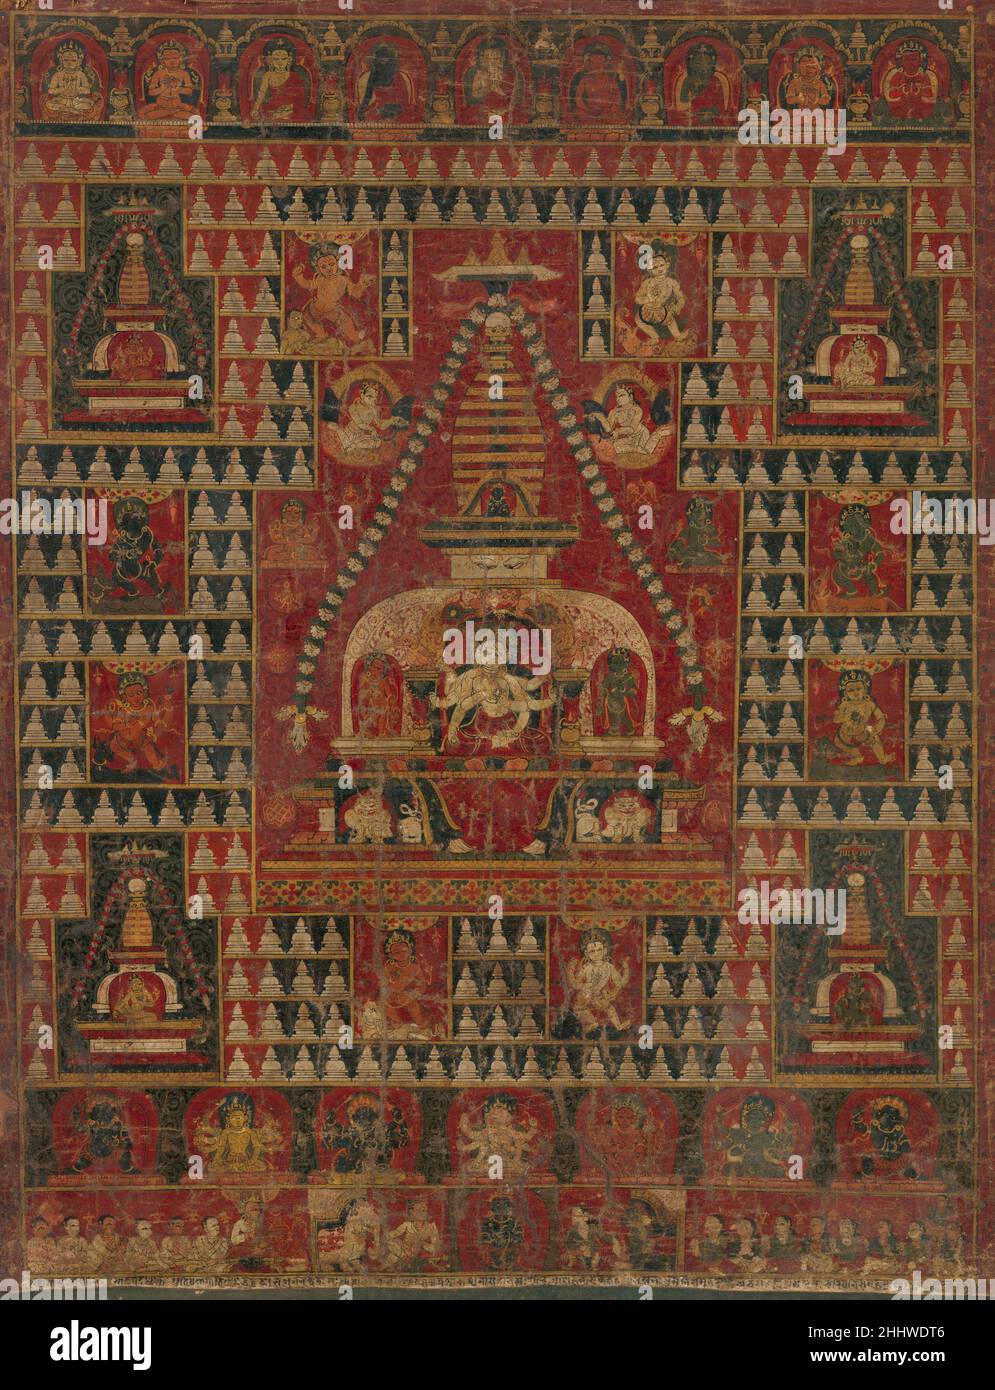 Ushnishavijaya intronò nel grembo di uno Stupa datato 1510–19 Nepal questa è una delle prime immagini estanti della dea buddista raramente rappresentata Ushnishavijaya. Incarna un incantesimo magico (dharani) recitato dai praticanti per raggiungere la liberazione attraverso l'accumulazione del merito. Il potere della moltiplicazione del merito buddista è suggerito dai molti piccoli stupa (chaityas), che evocano simbolicamente la donazione di centomila stupa. Multi-armato e multi-testa, Ushnishavijaya, di colore bianco (come la luna d'autunno), è seduto nella stupa centrale, fiancheggiata da rosso e gre Foto Stock